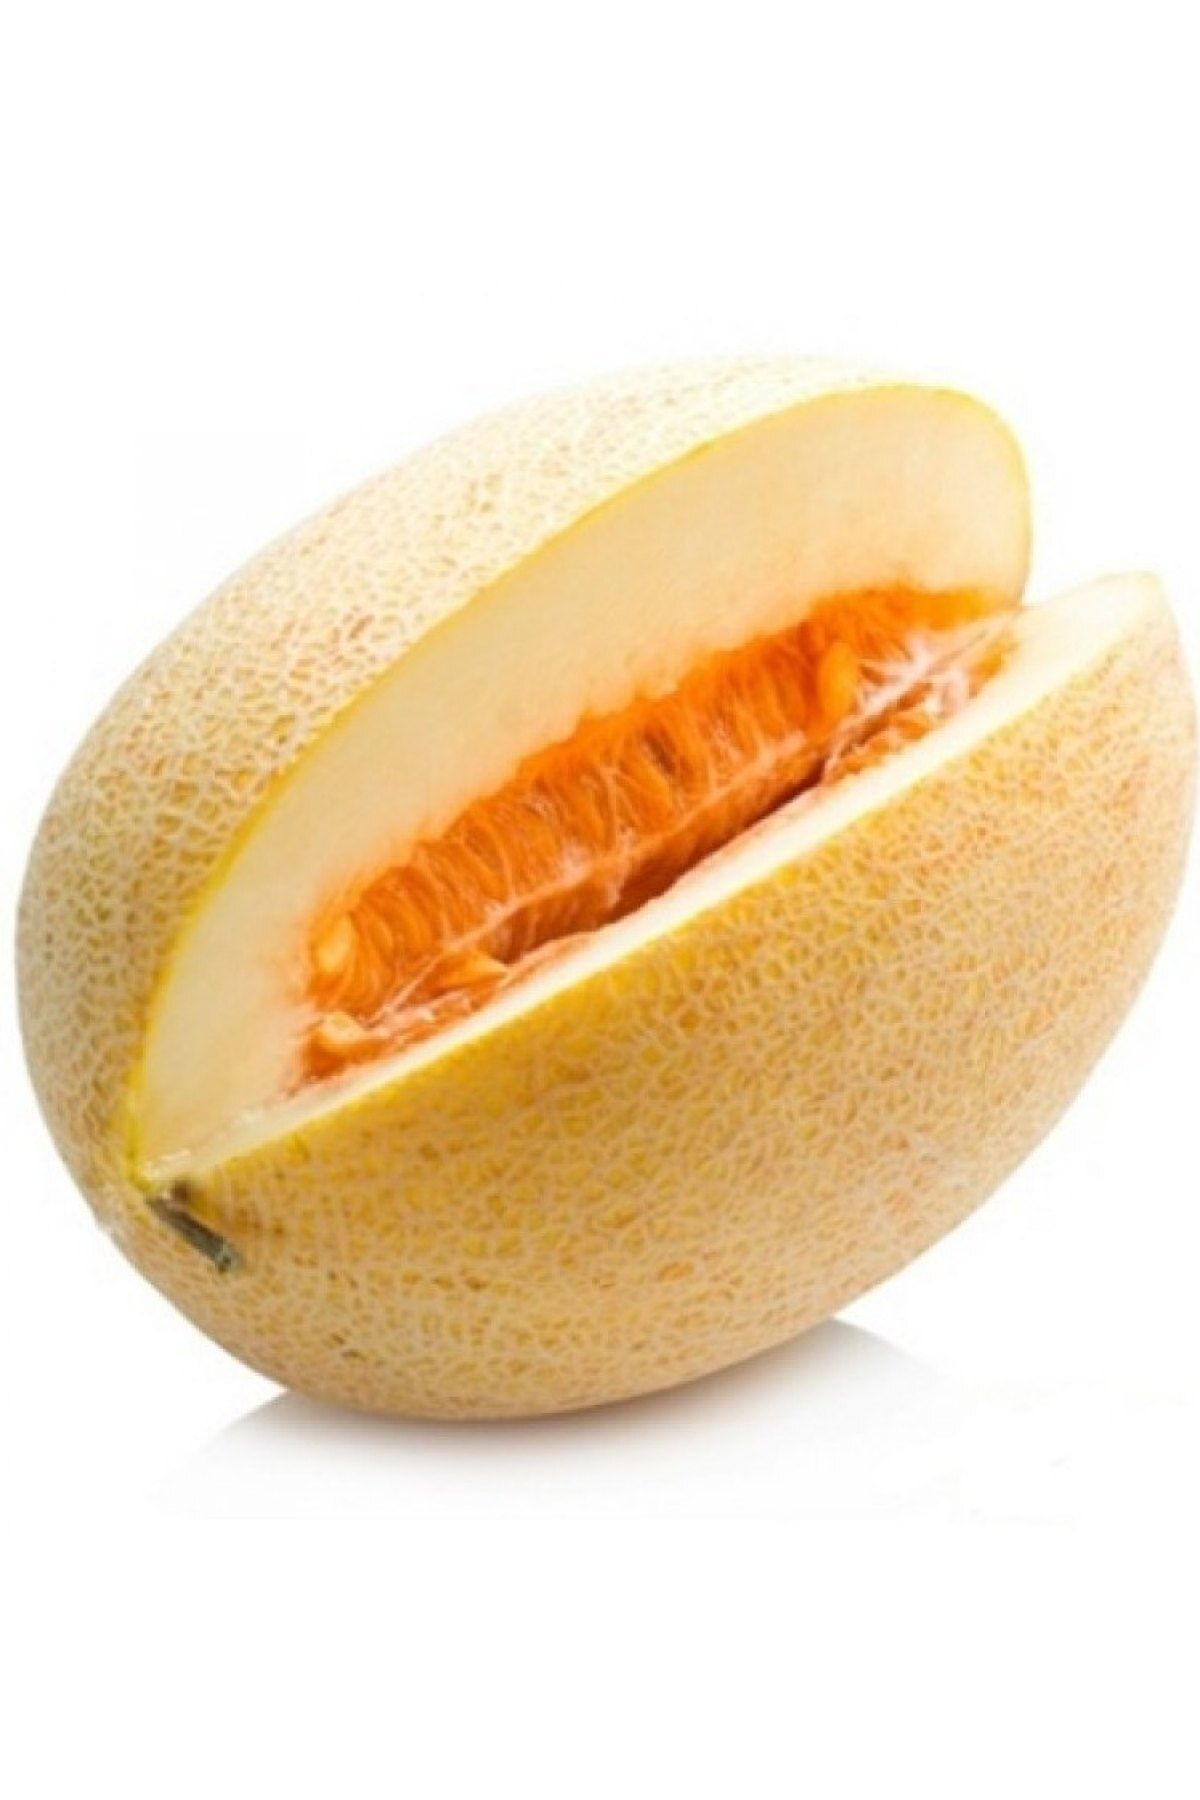 AGRODAL TARIM Ata Tohumu Yerli Doğal Yazlık Bal Kavun Ananas 100 Ad. Sebze Tohumu